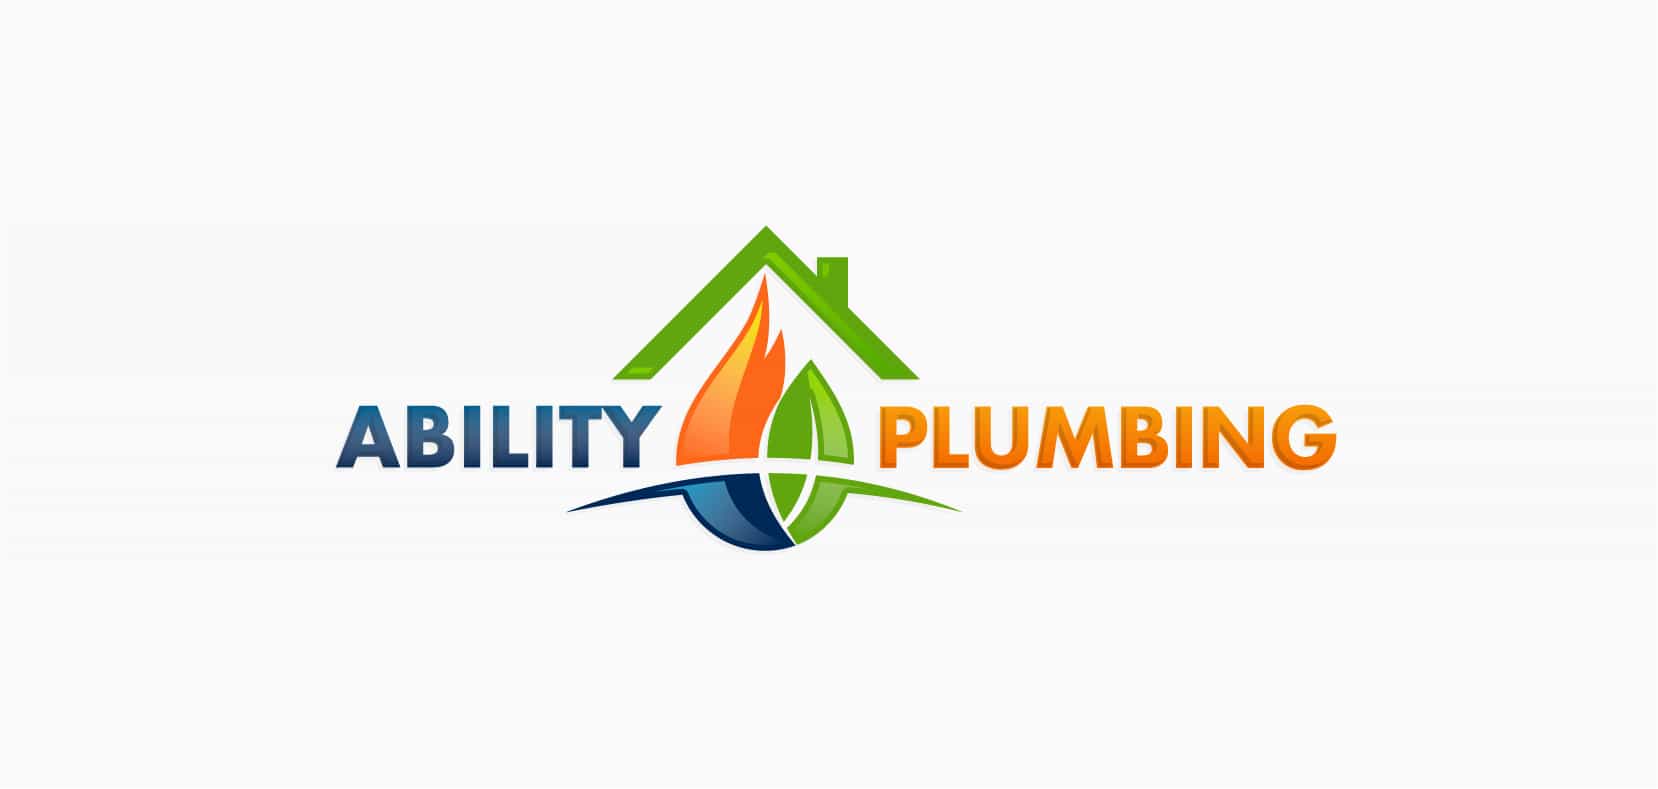 Plumbing Logo - Plumbing Logo Design - Logos for Plumbing, Heating & Gas Companies